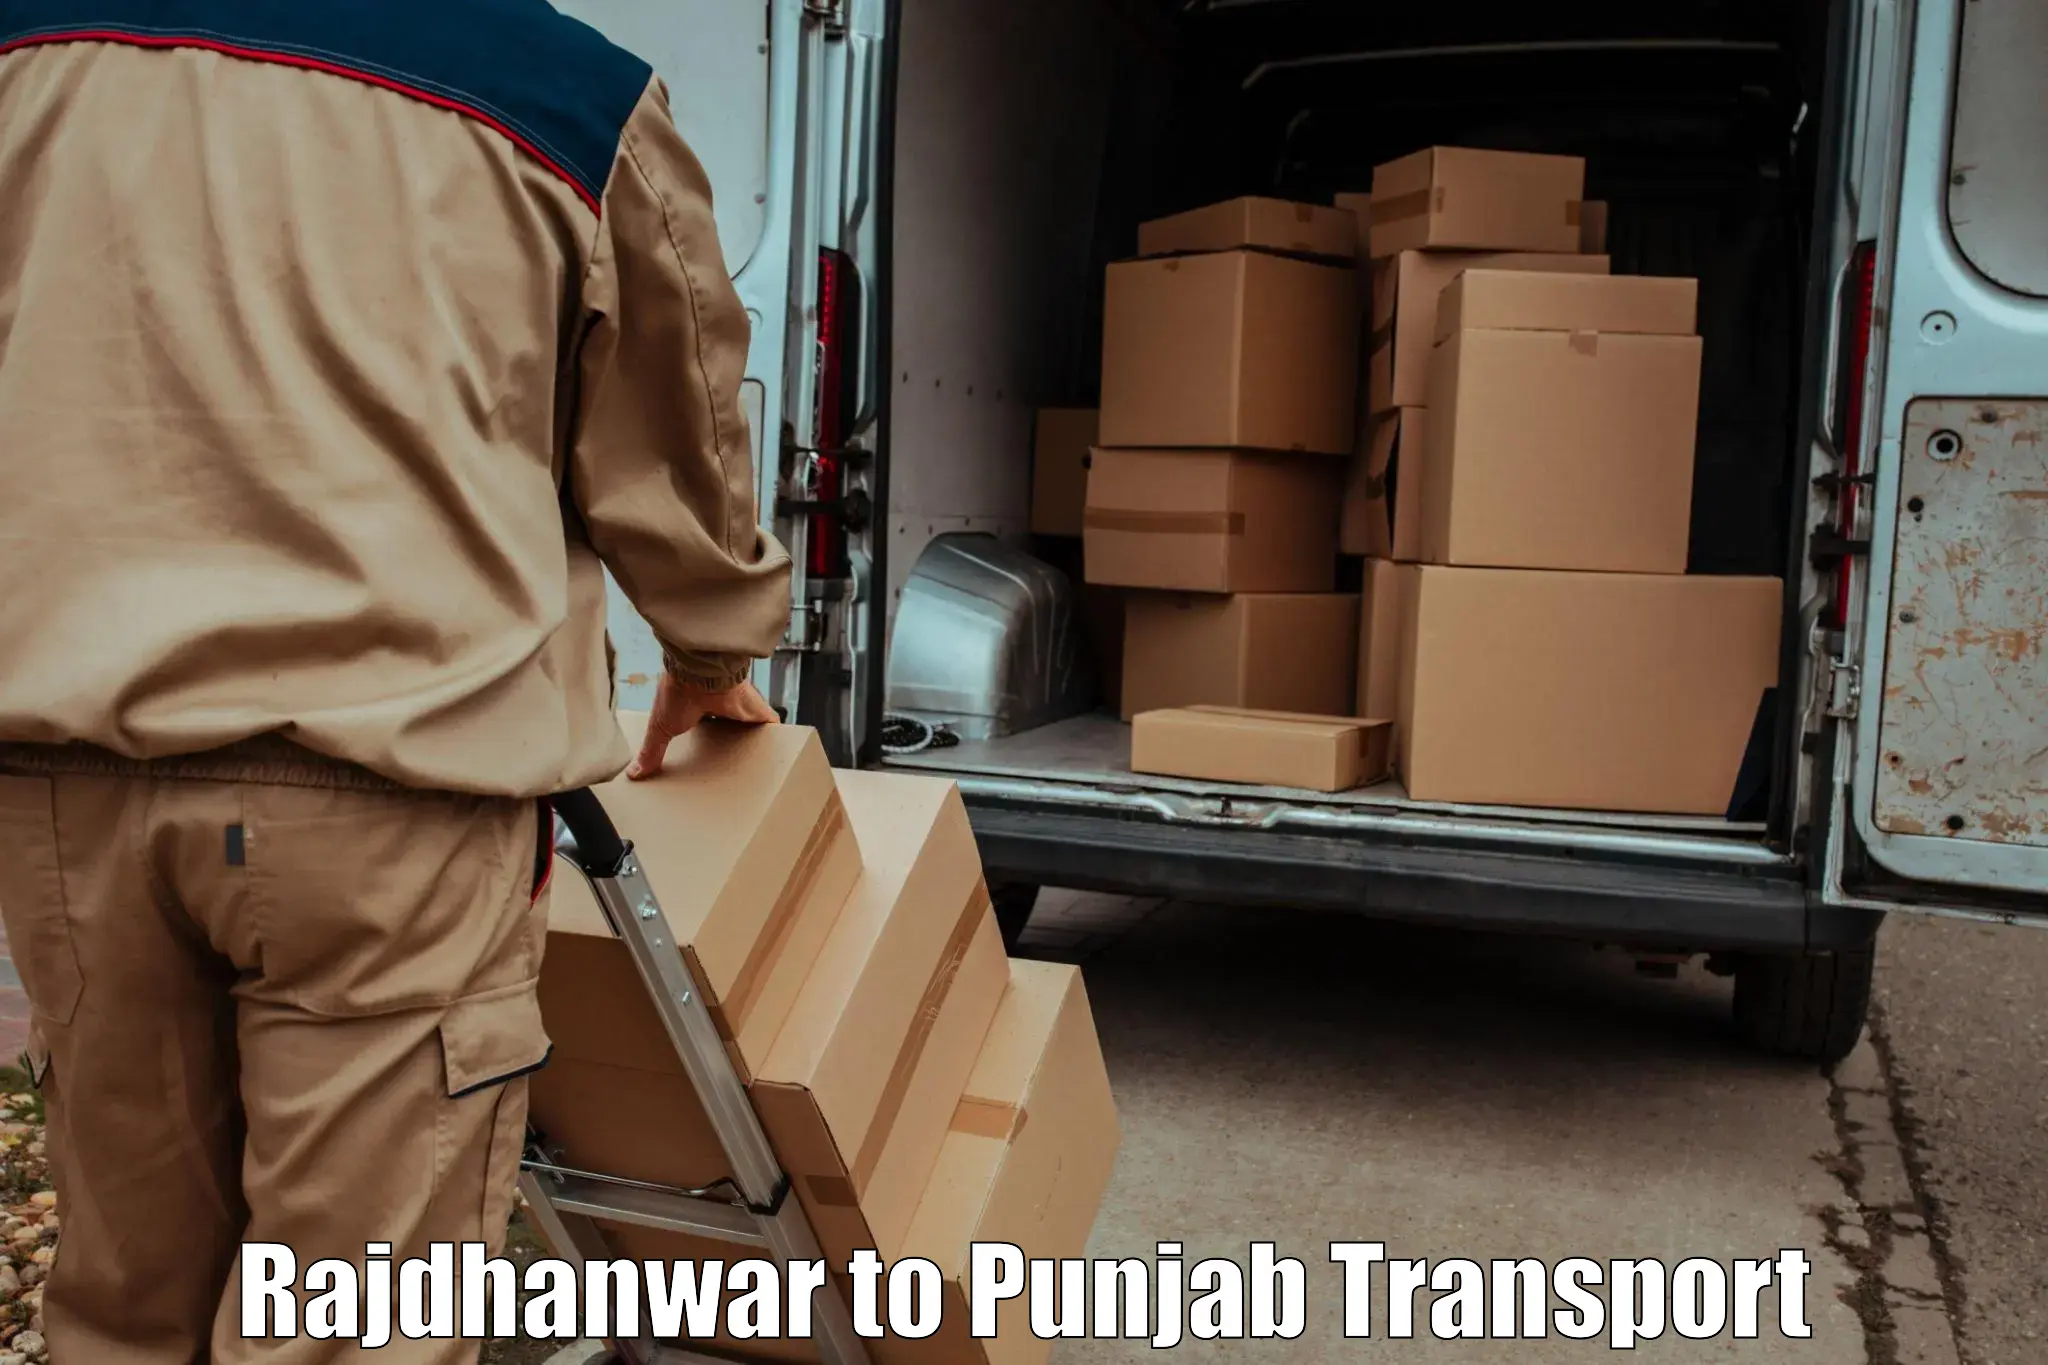 Transport in sharing Rajdhanwar to Central University of Punjab Bathinda